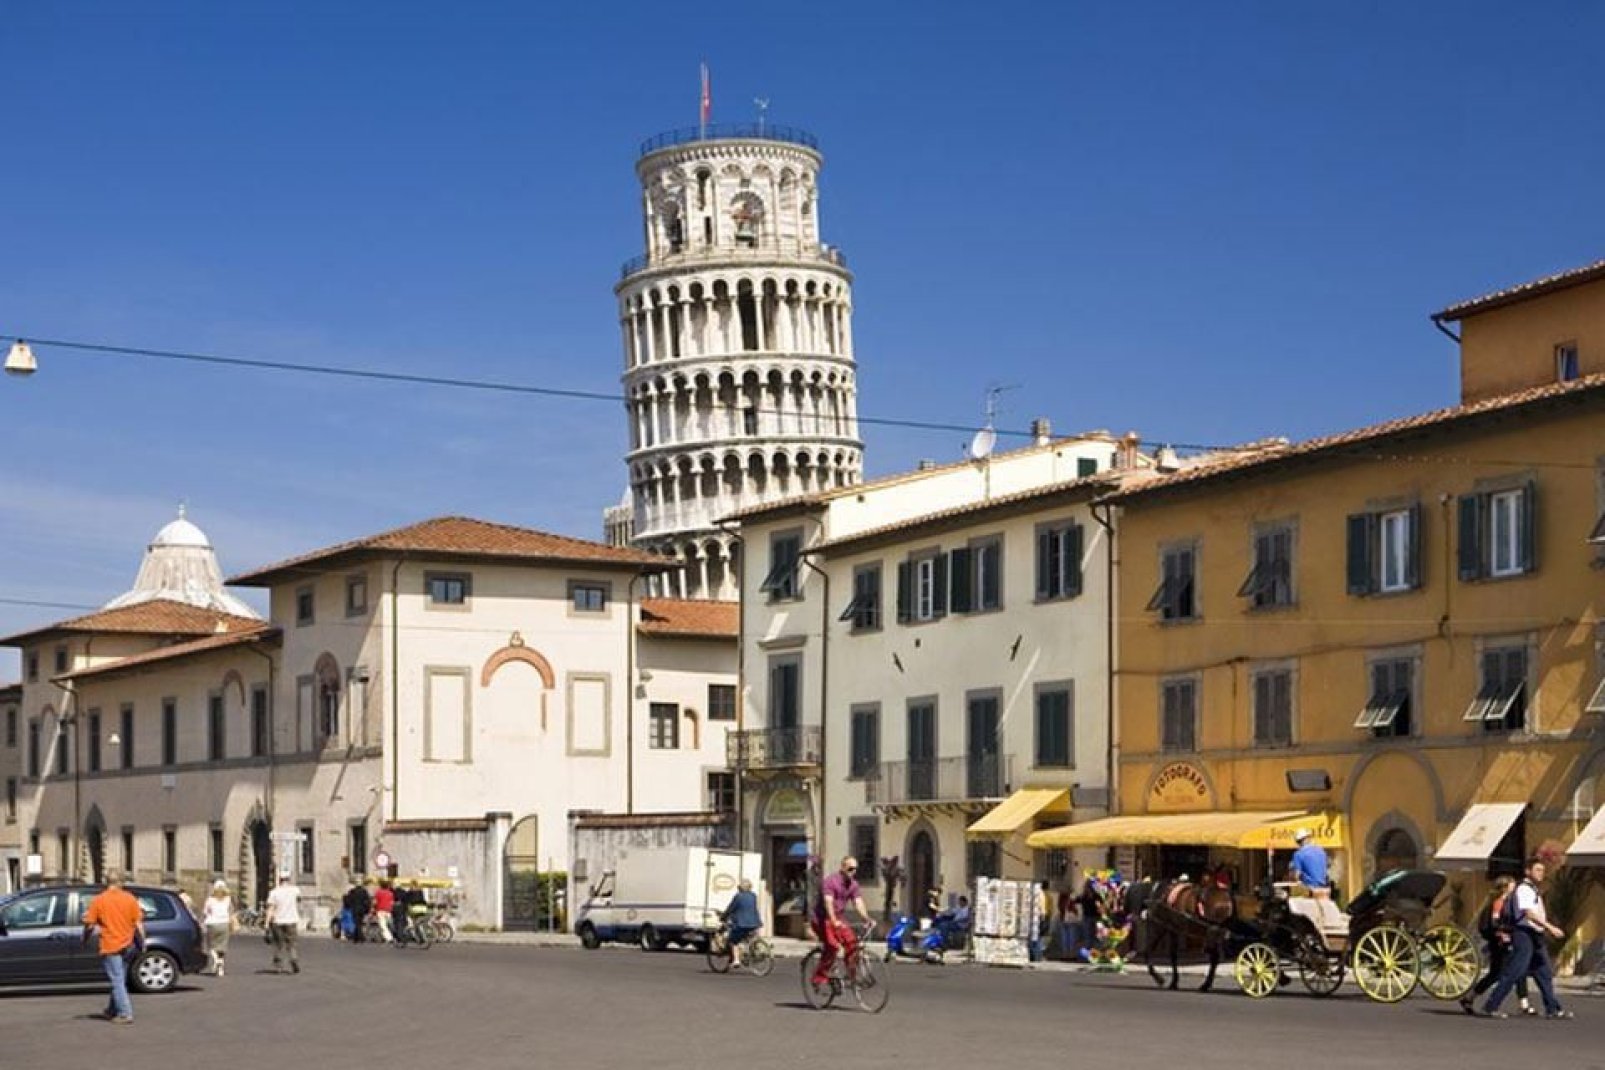 Der höchste Teil des Turms ragt über den Gebäuden im Zentrum von Pisa.